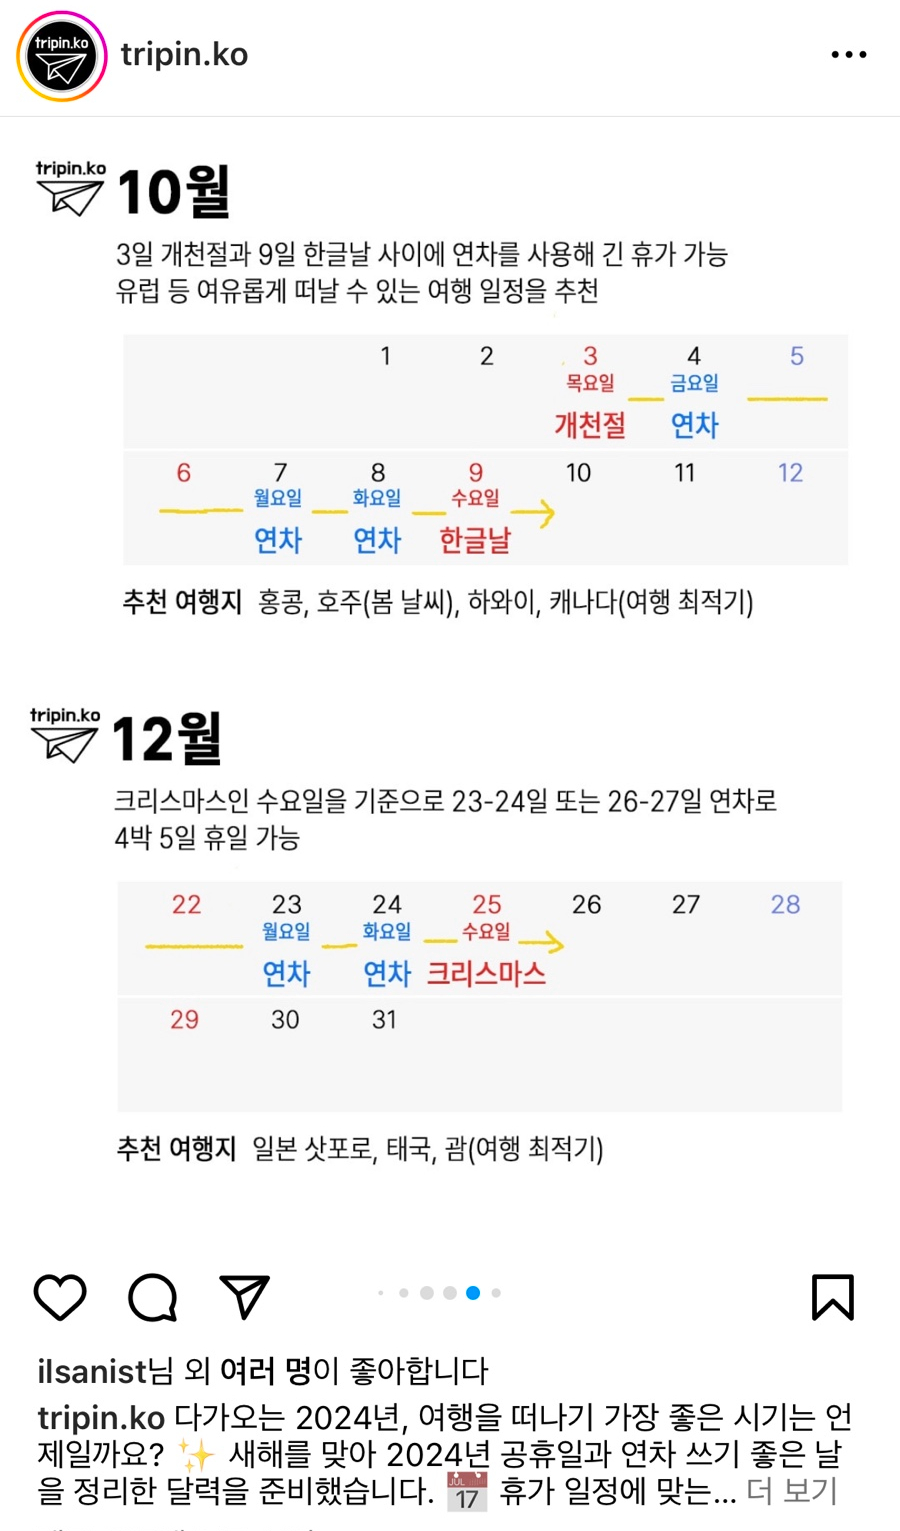 2024 공휴일 연차 쓰기 좋은 날 정리 feat. 설, 4월 총선, 5월, 추석 연휴 등